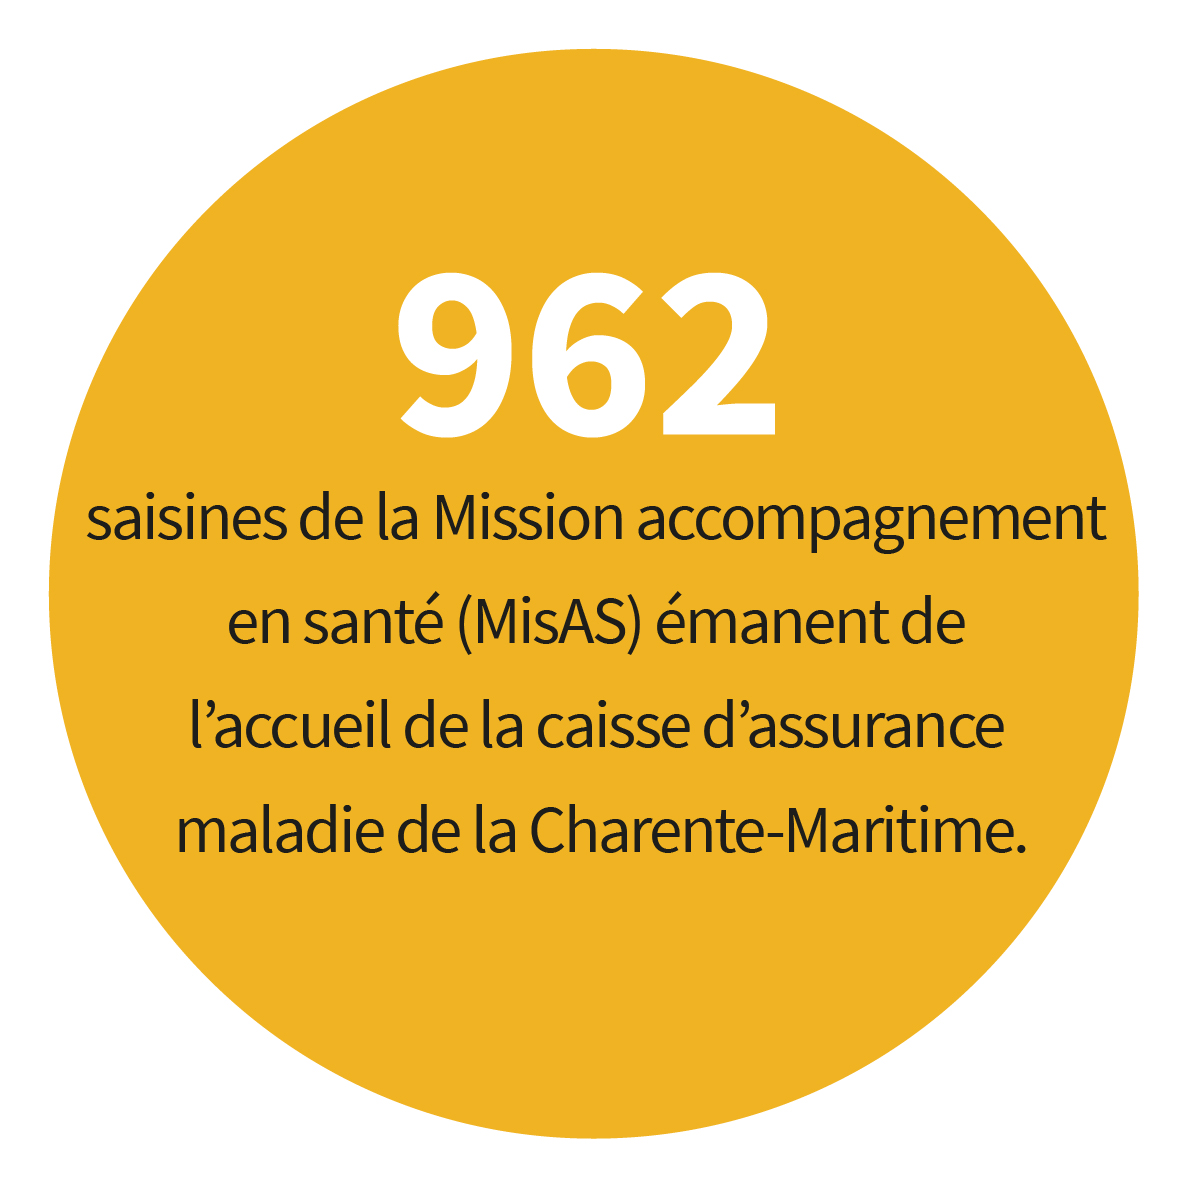 962 saisines de la Mission accompagnement en santé (MisAS) émanent de l’accueil de la caisse d’assurance maladie de la Charente-Maritime.